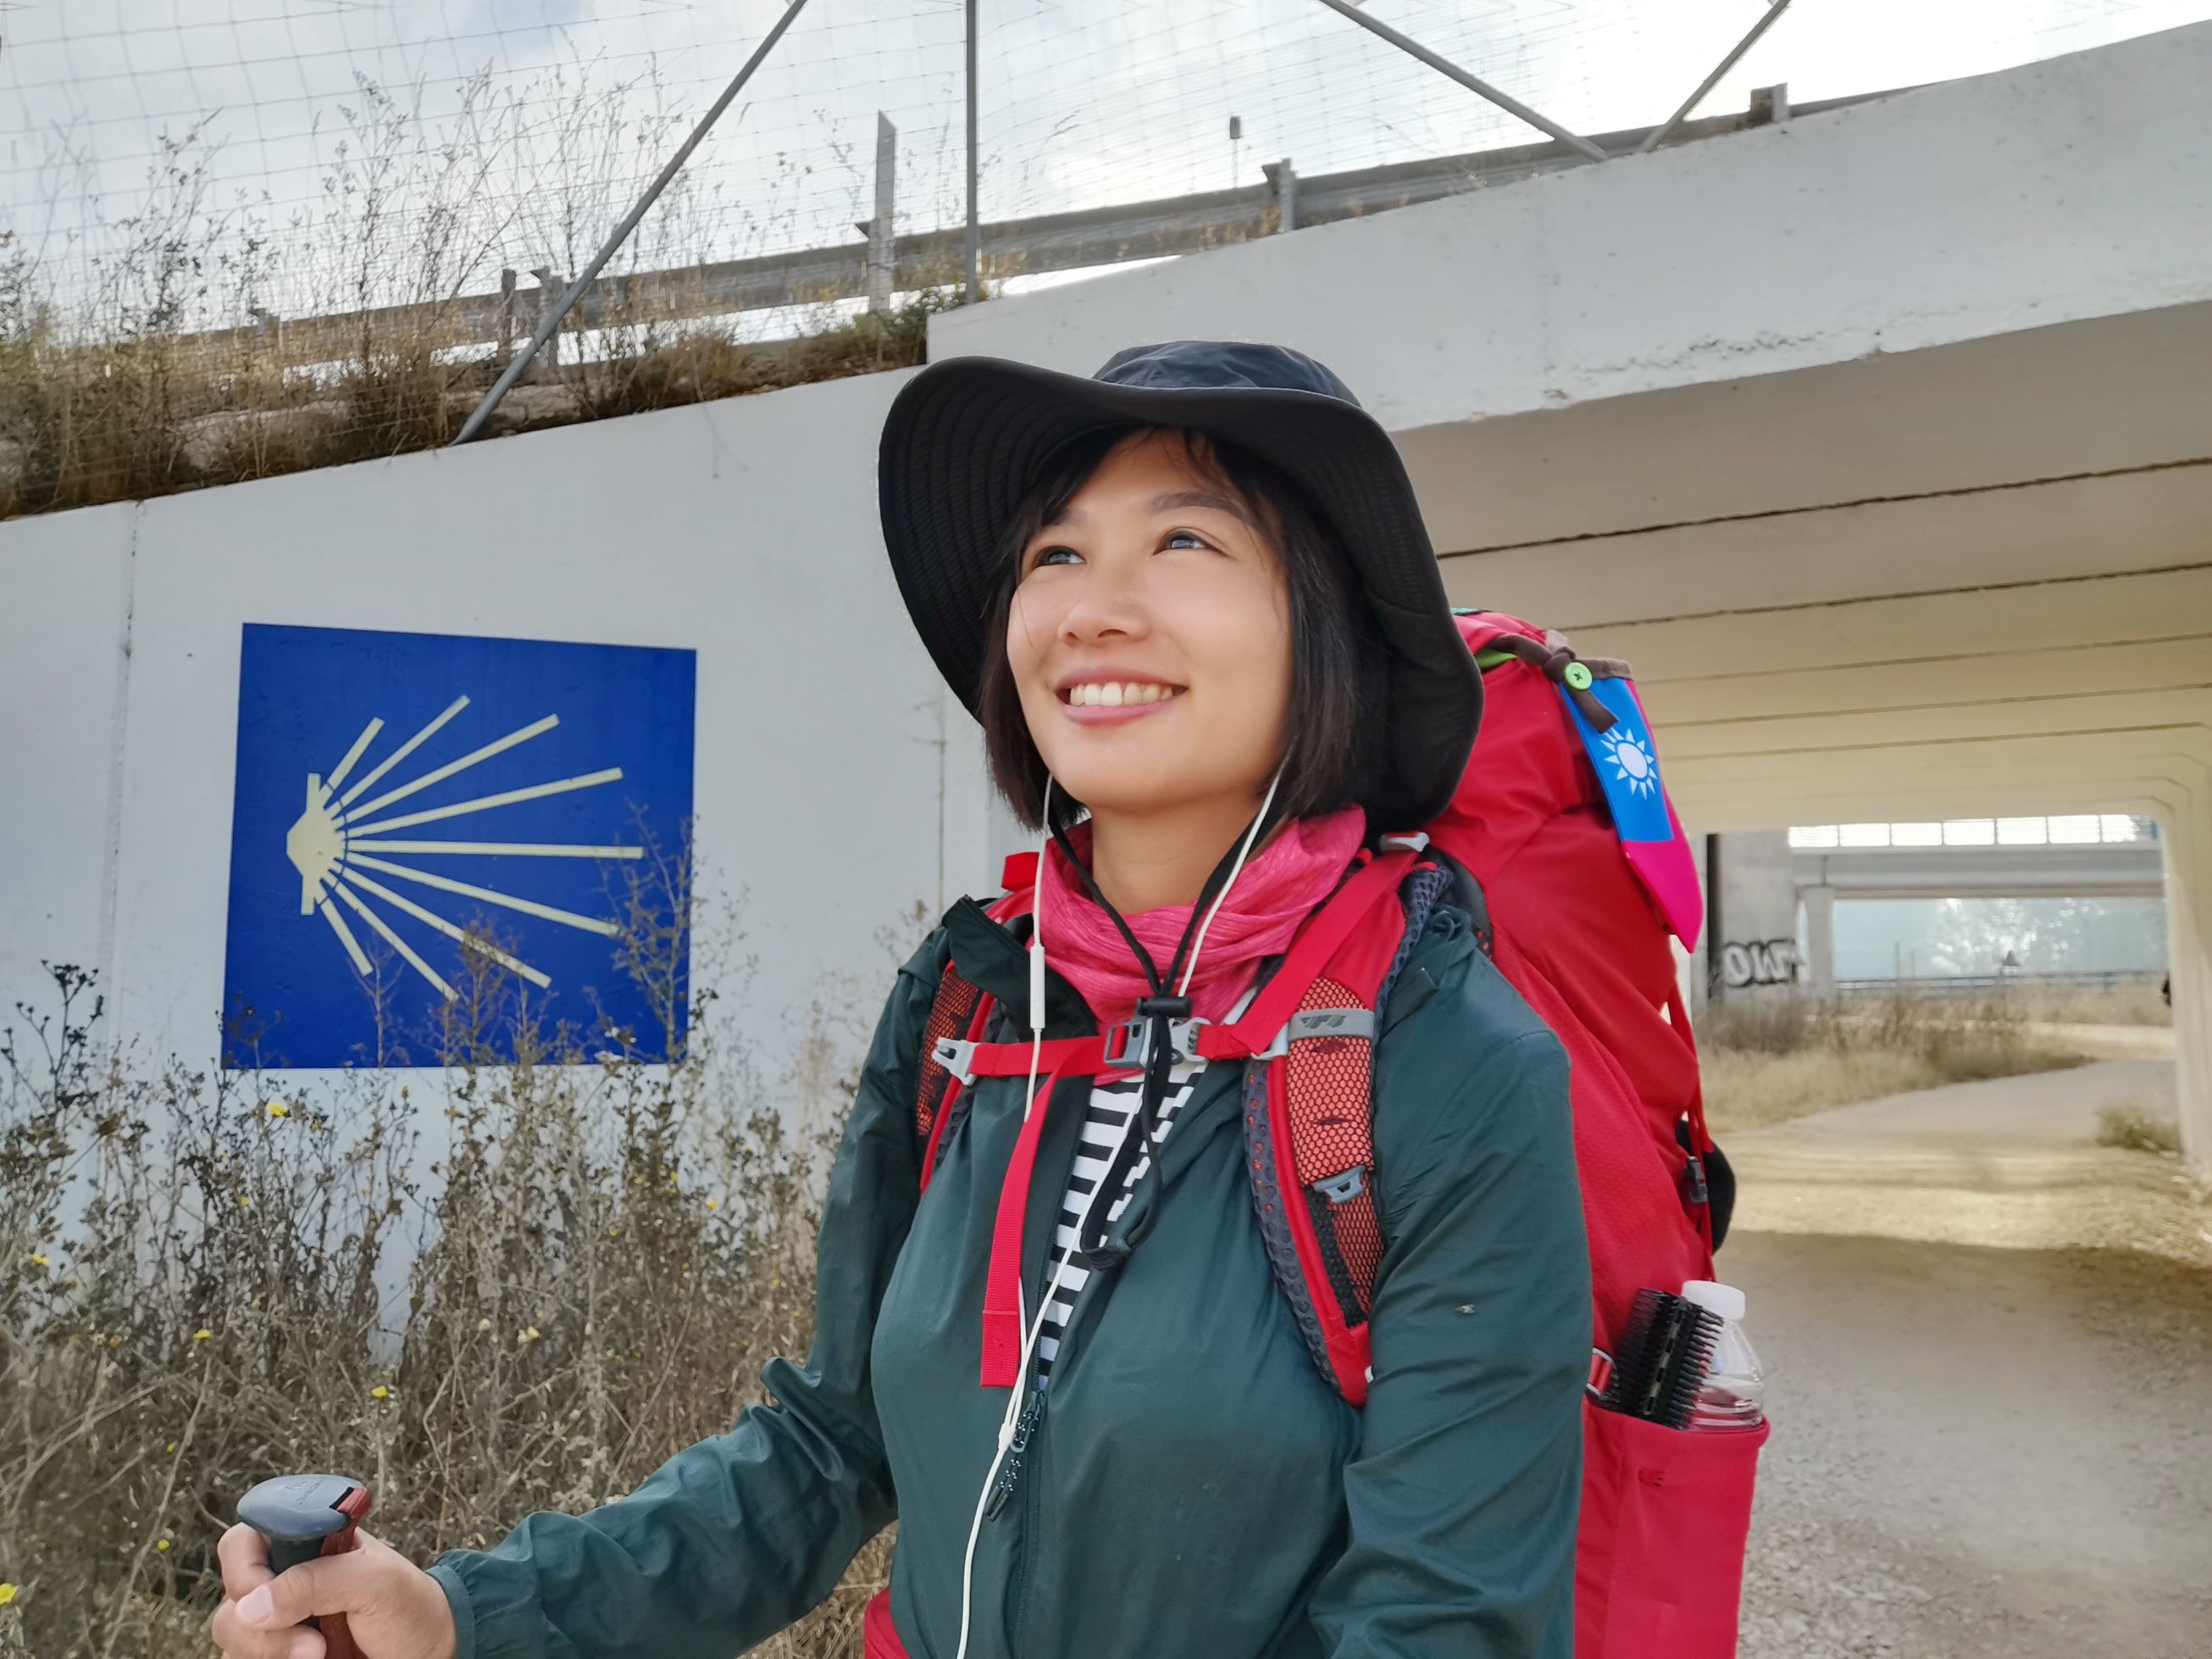 凱西在2019年踏上法國之路，花費30多天走了近800公里路程，時間最長也最刻骨銘心。(凱西提供)